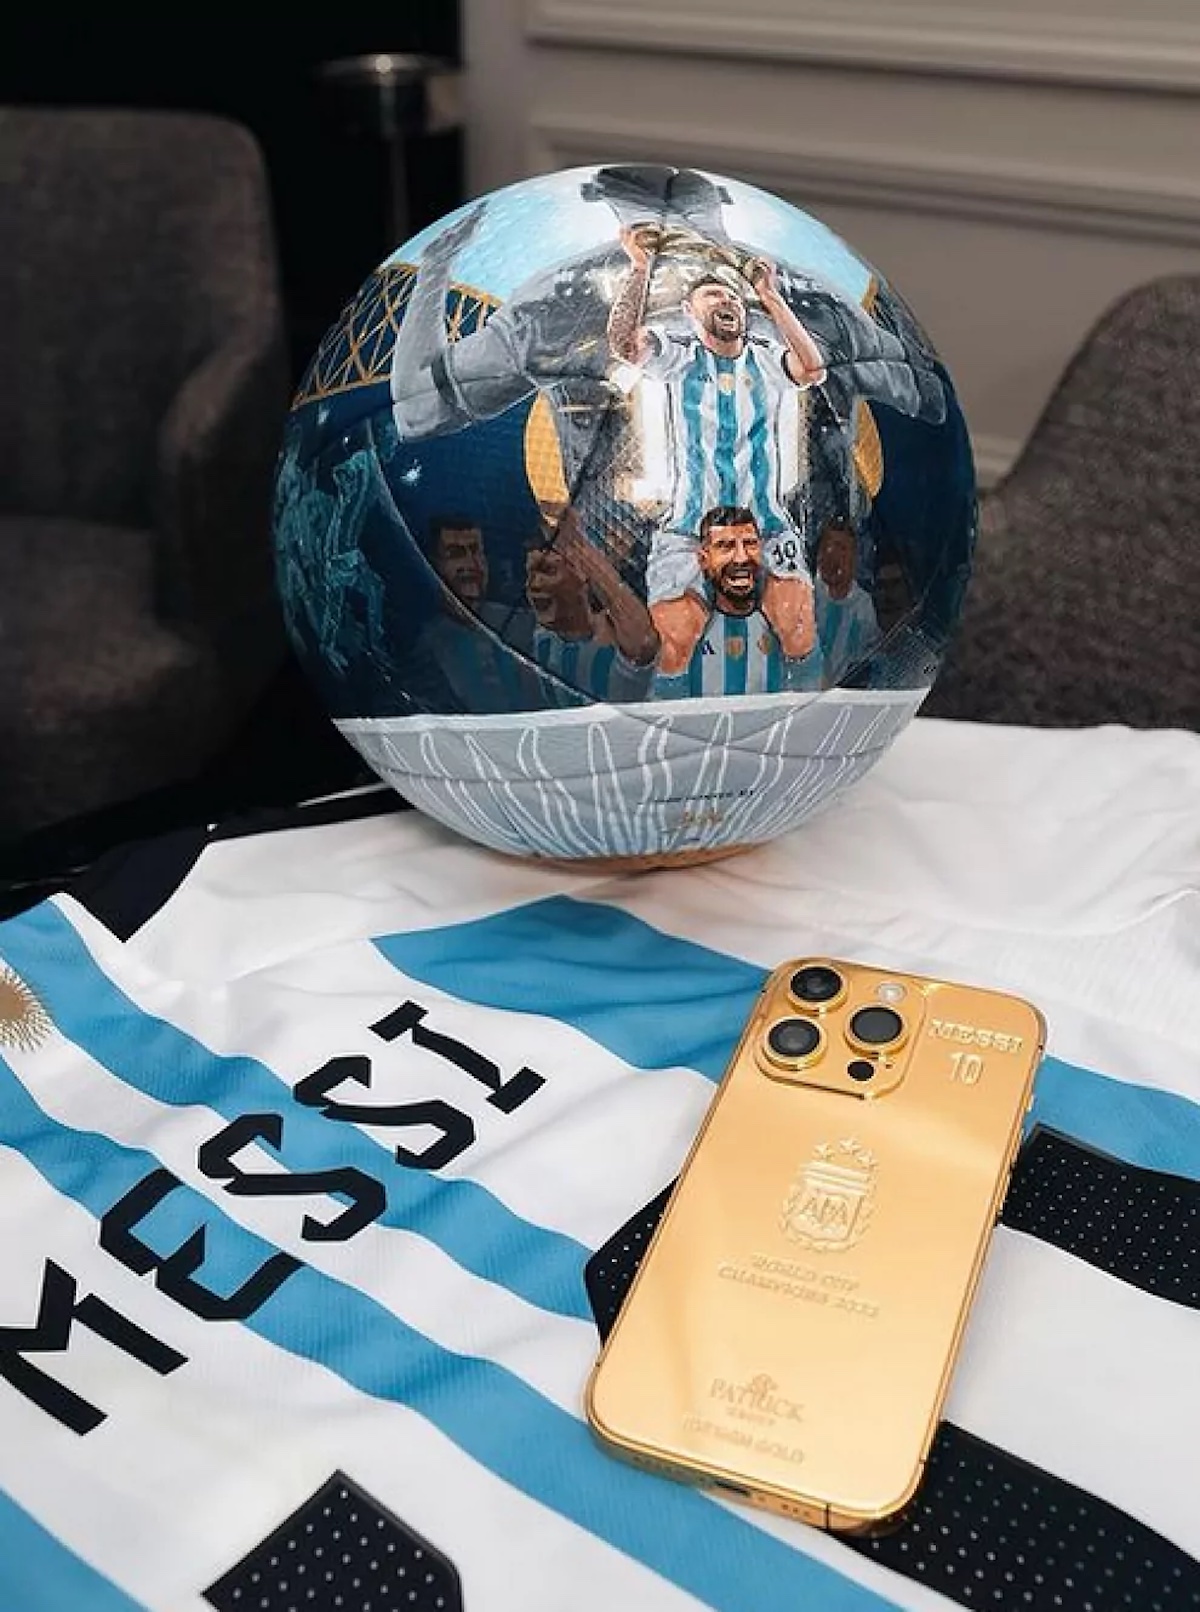 Per la vittoria ai mondiali Messi regala iPhone in oro a squadra e staff